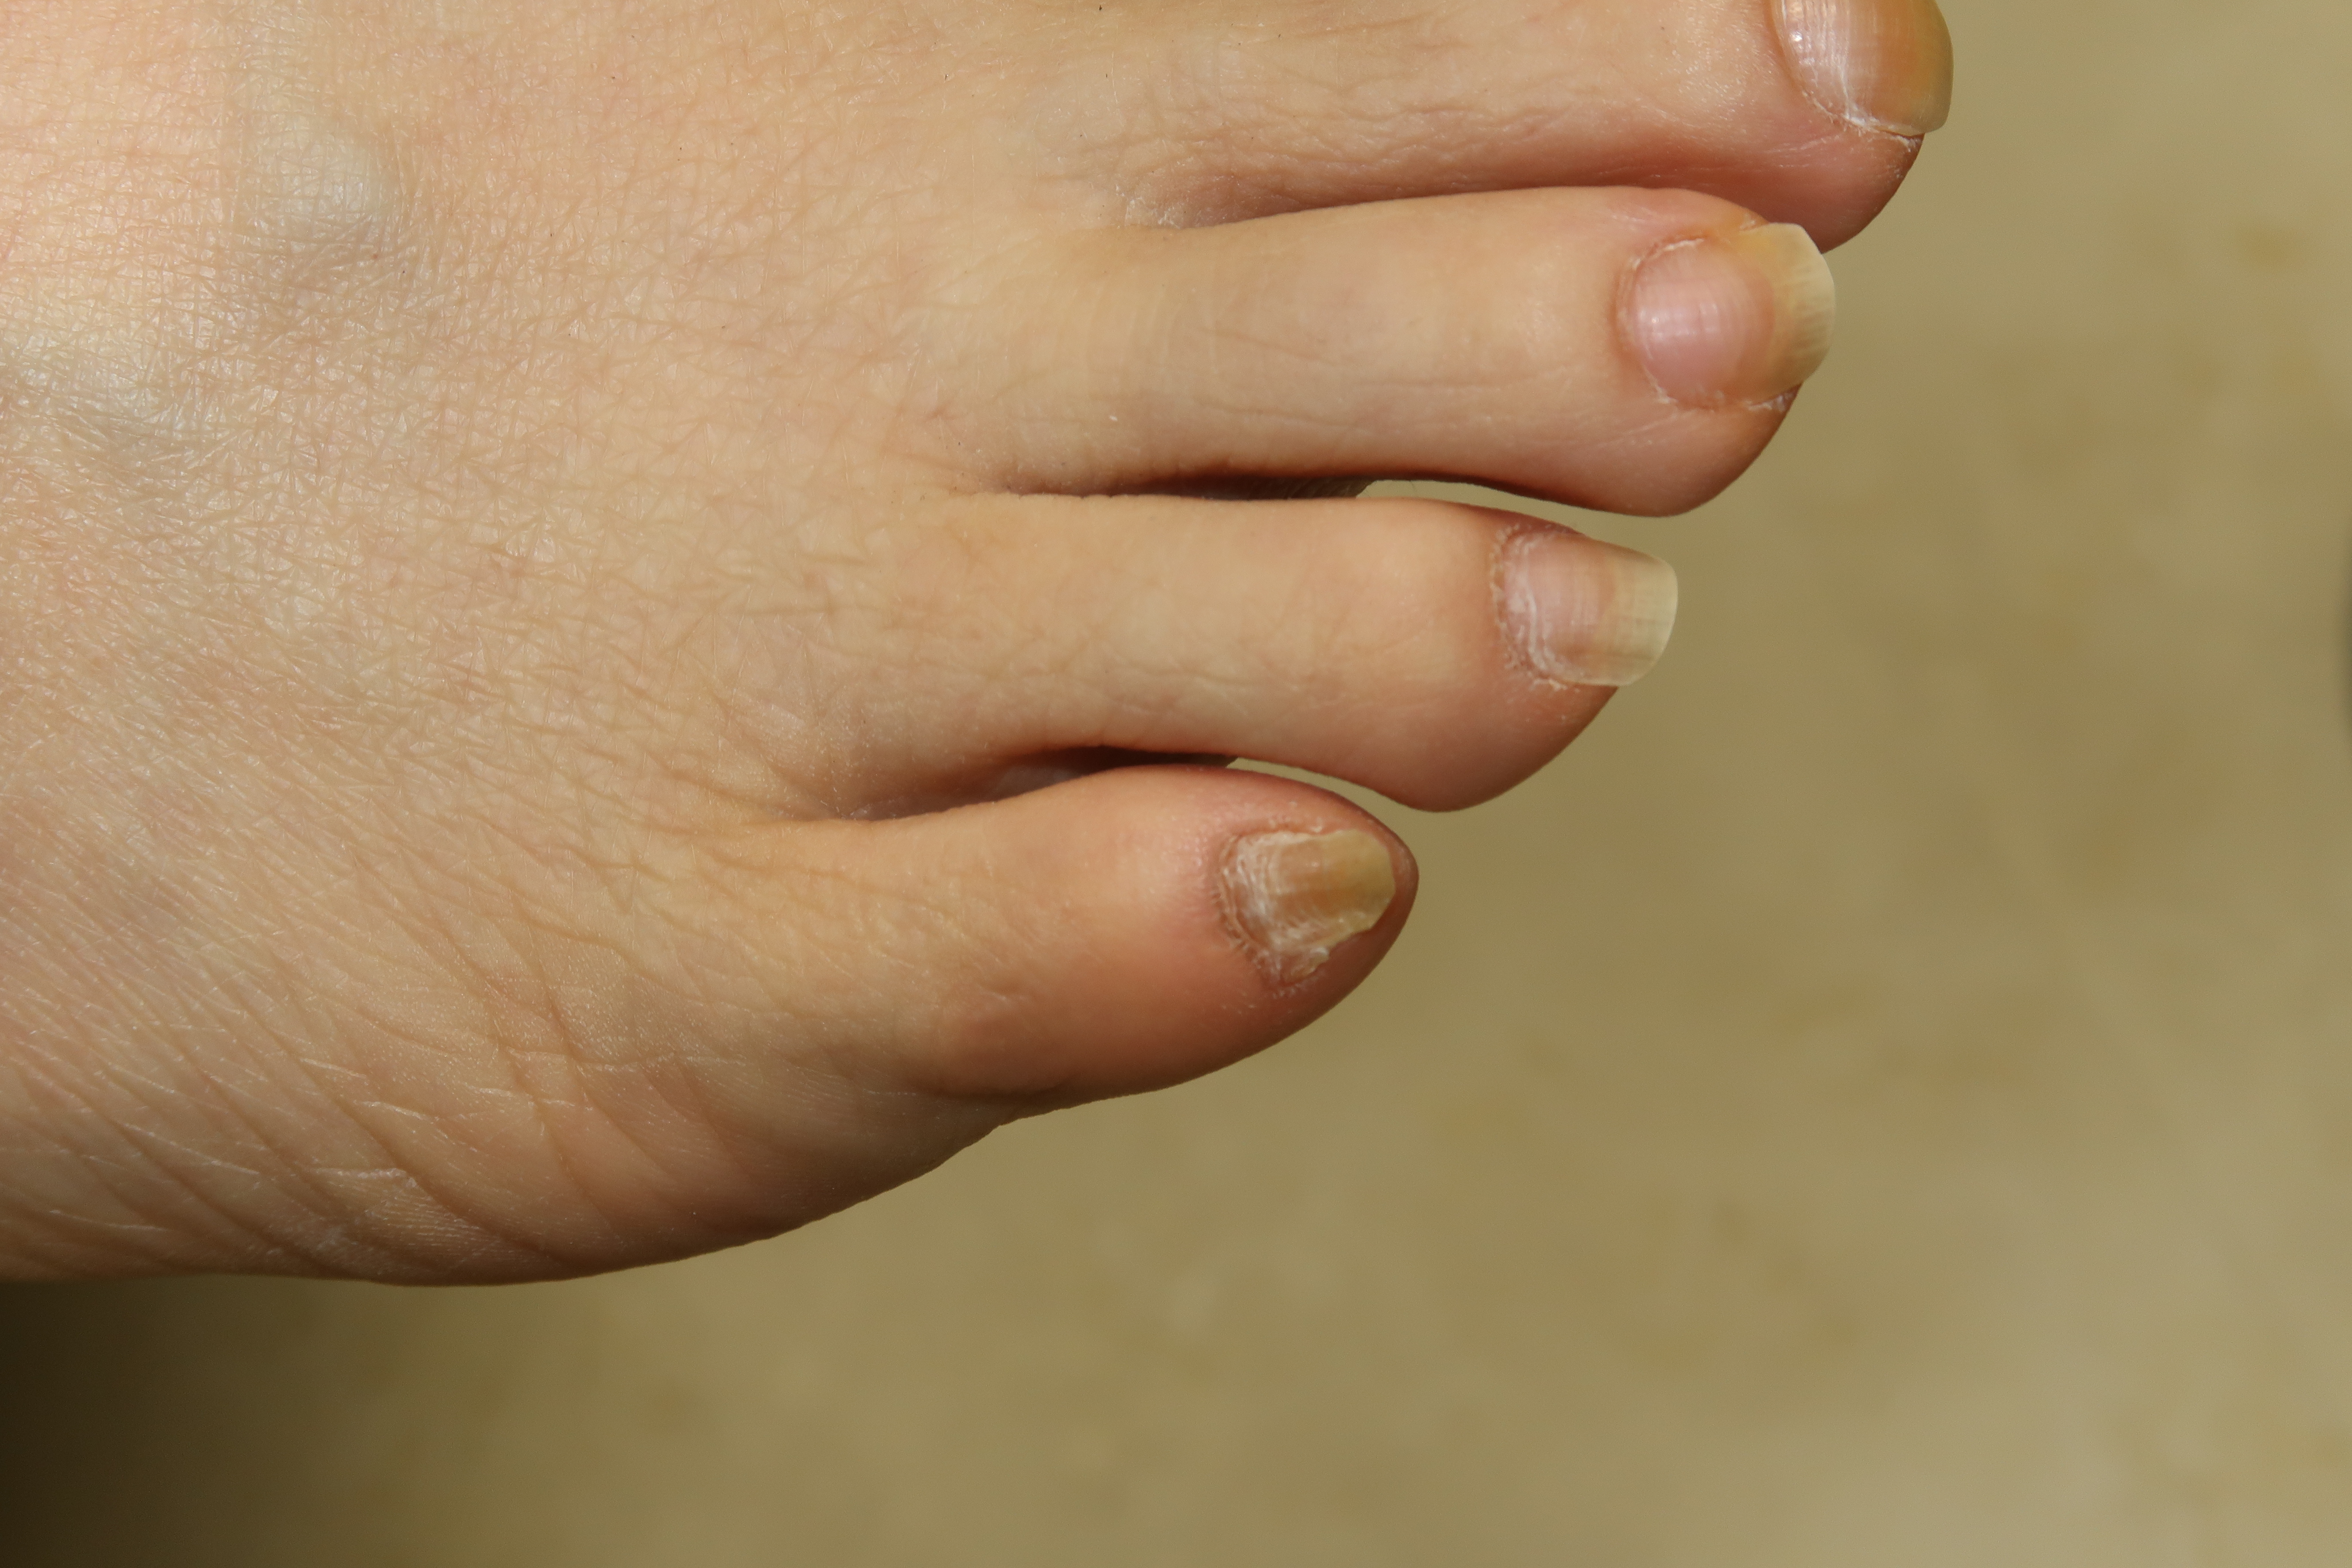 あなたの足の小指の爪 変形していませんか 一般社団法人 足の番人 公式 足の知識 活動報告